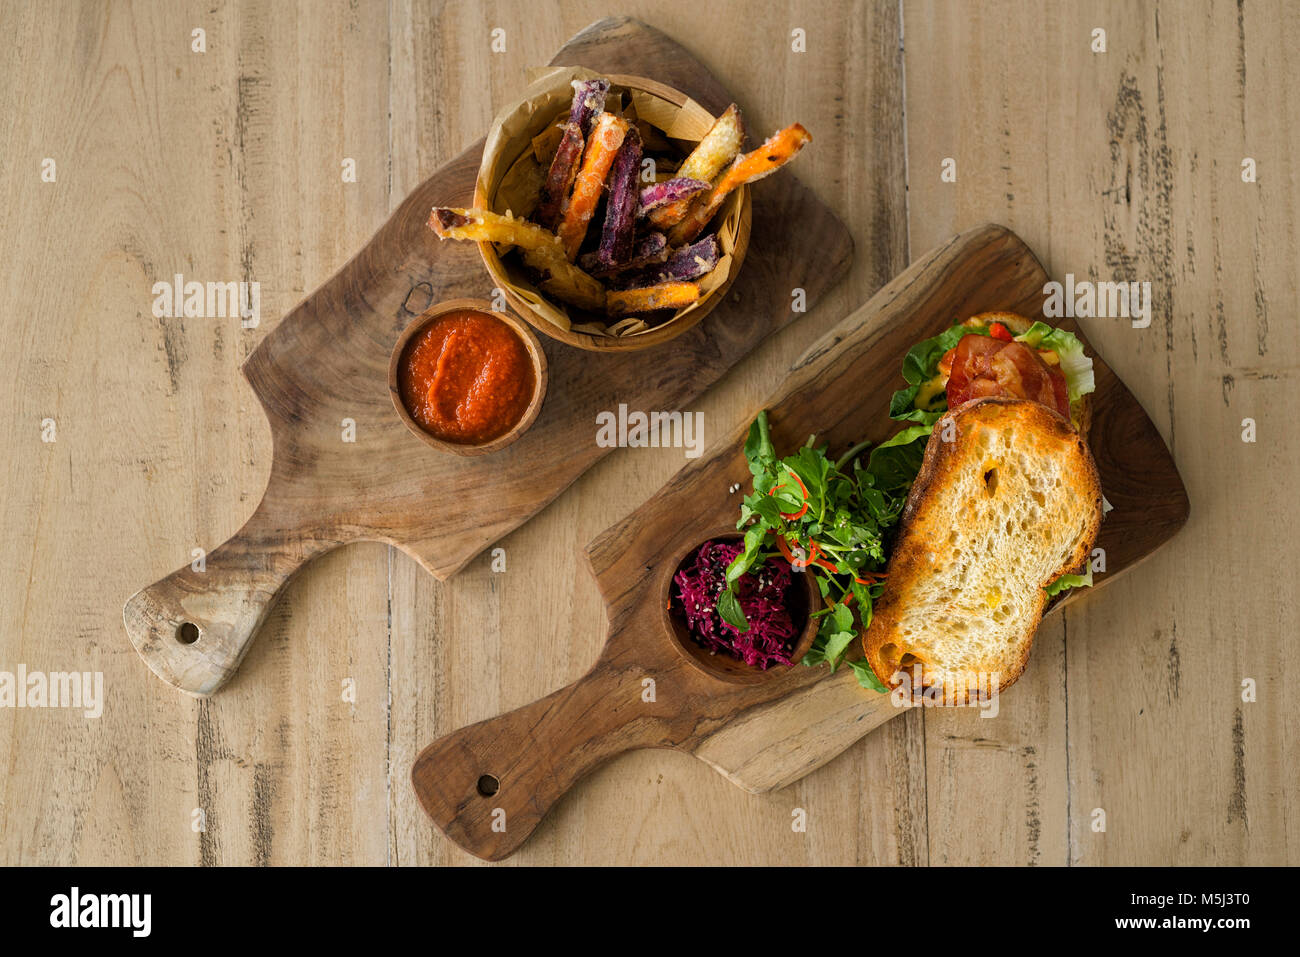 Zwei Holz- platten mit hausgemachten süßen Kartoffeln und Pommes Frites, Tomaten-dip und knuspriges Brot mit Salat, Schinken und Rote Bete Stockfoto